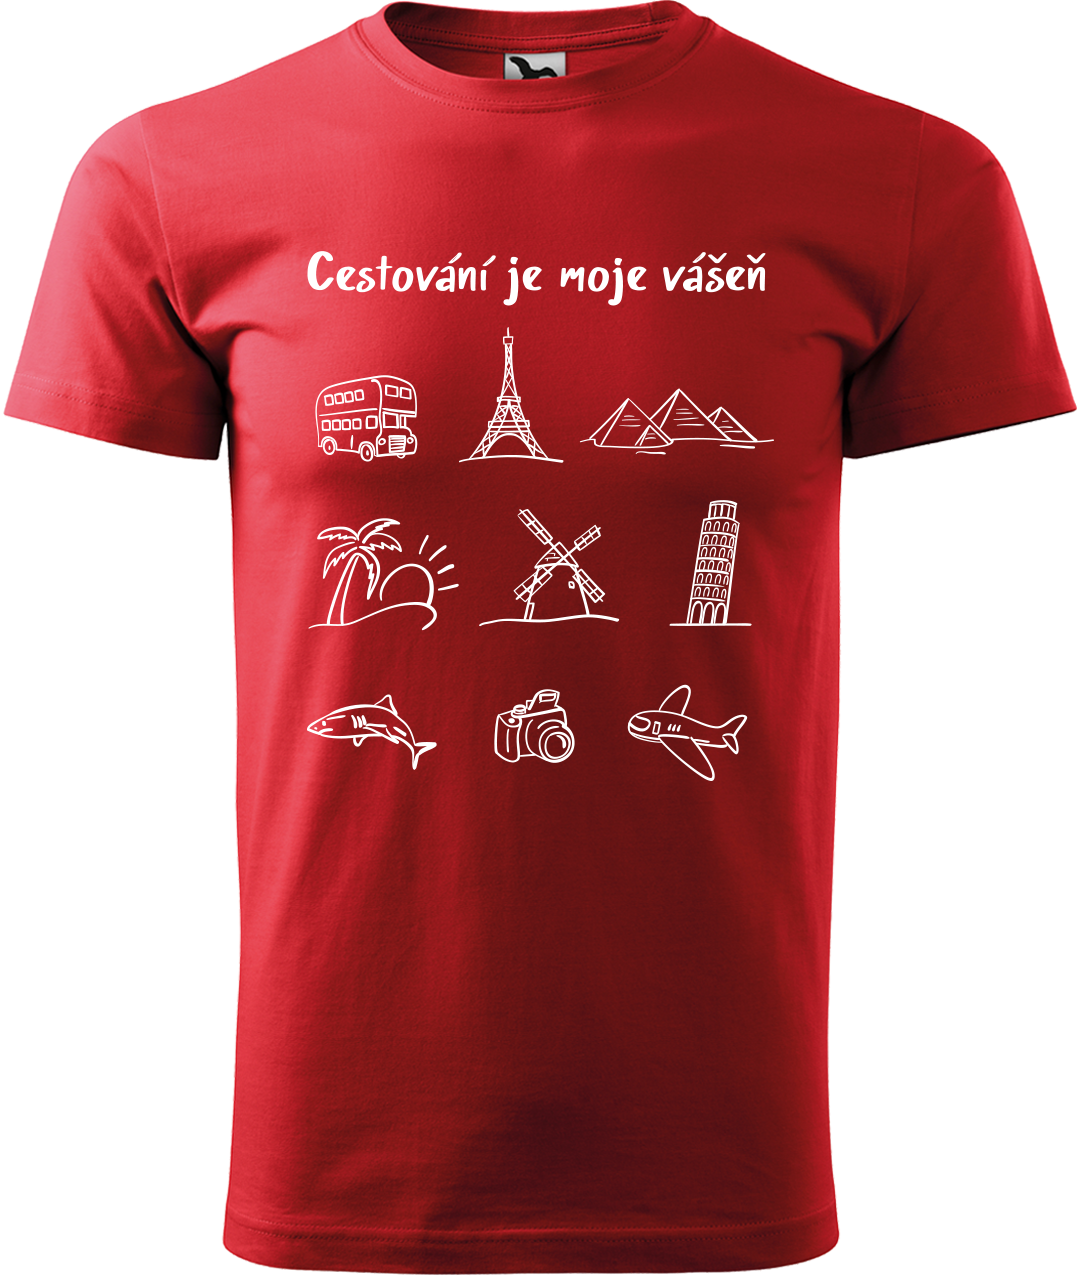 Pánské cestovatelské tričko - Cestování je moje vášeň Velikost: L, Barva: Červená (07)